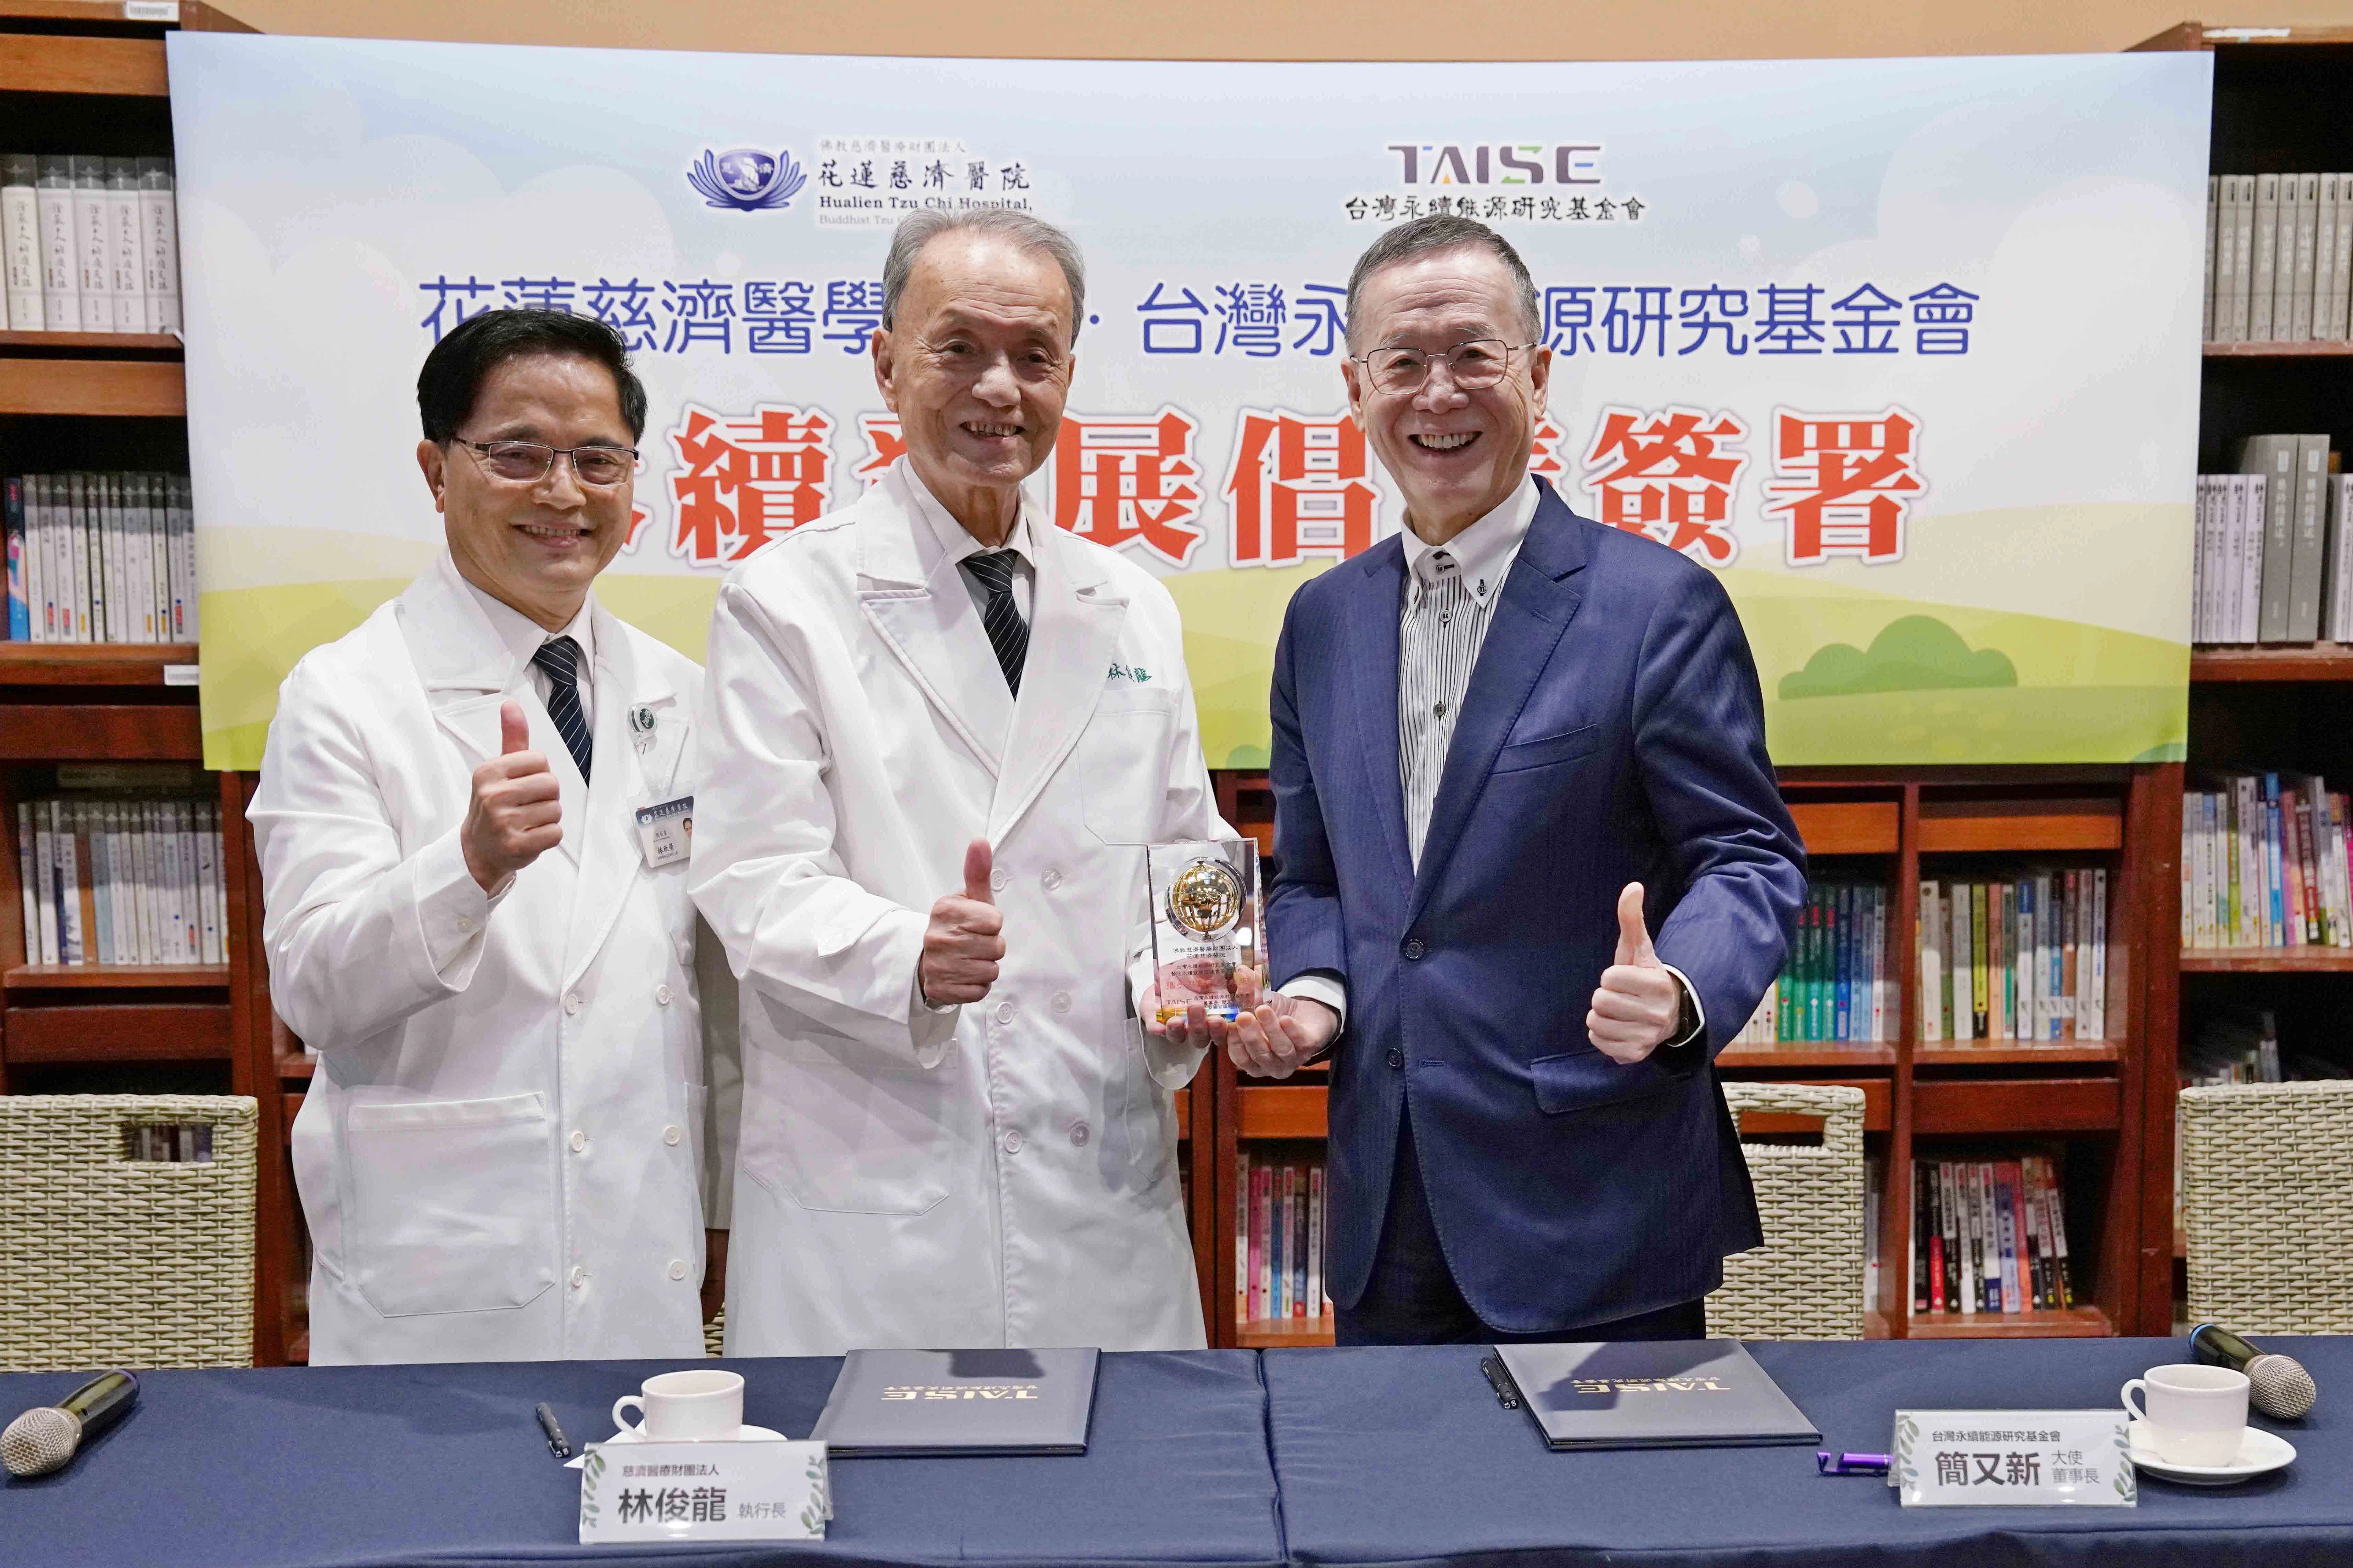 林欣榮院長(左起)、林俊龍執行長、簡又新董事長共同簽署「醫院永續發展倡議書」，簡又新董事長並回贈紀念獎座。